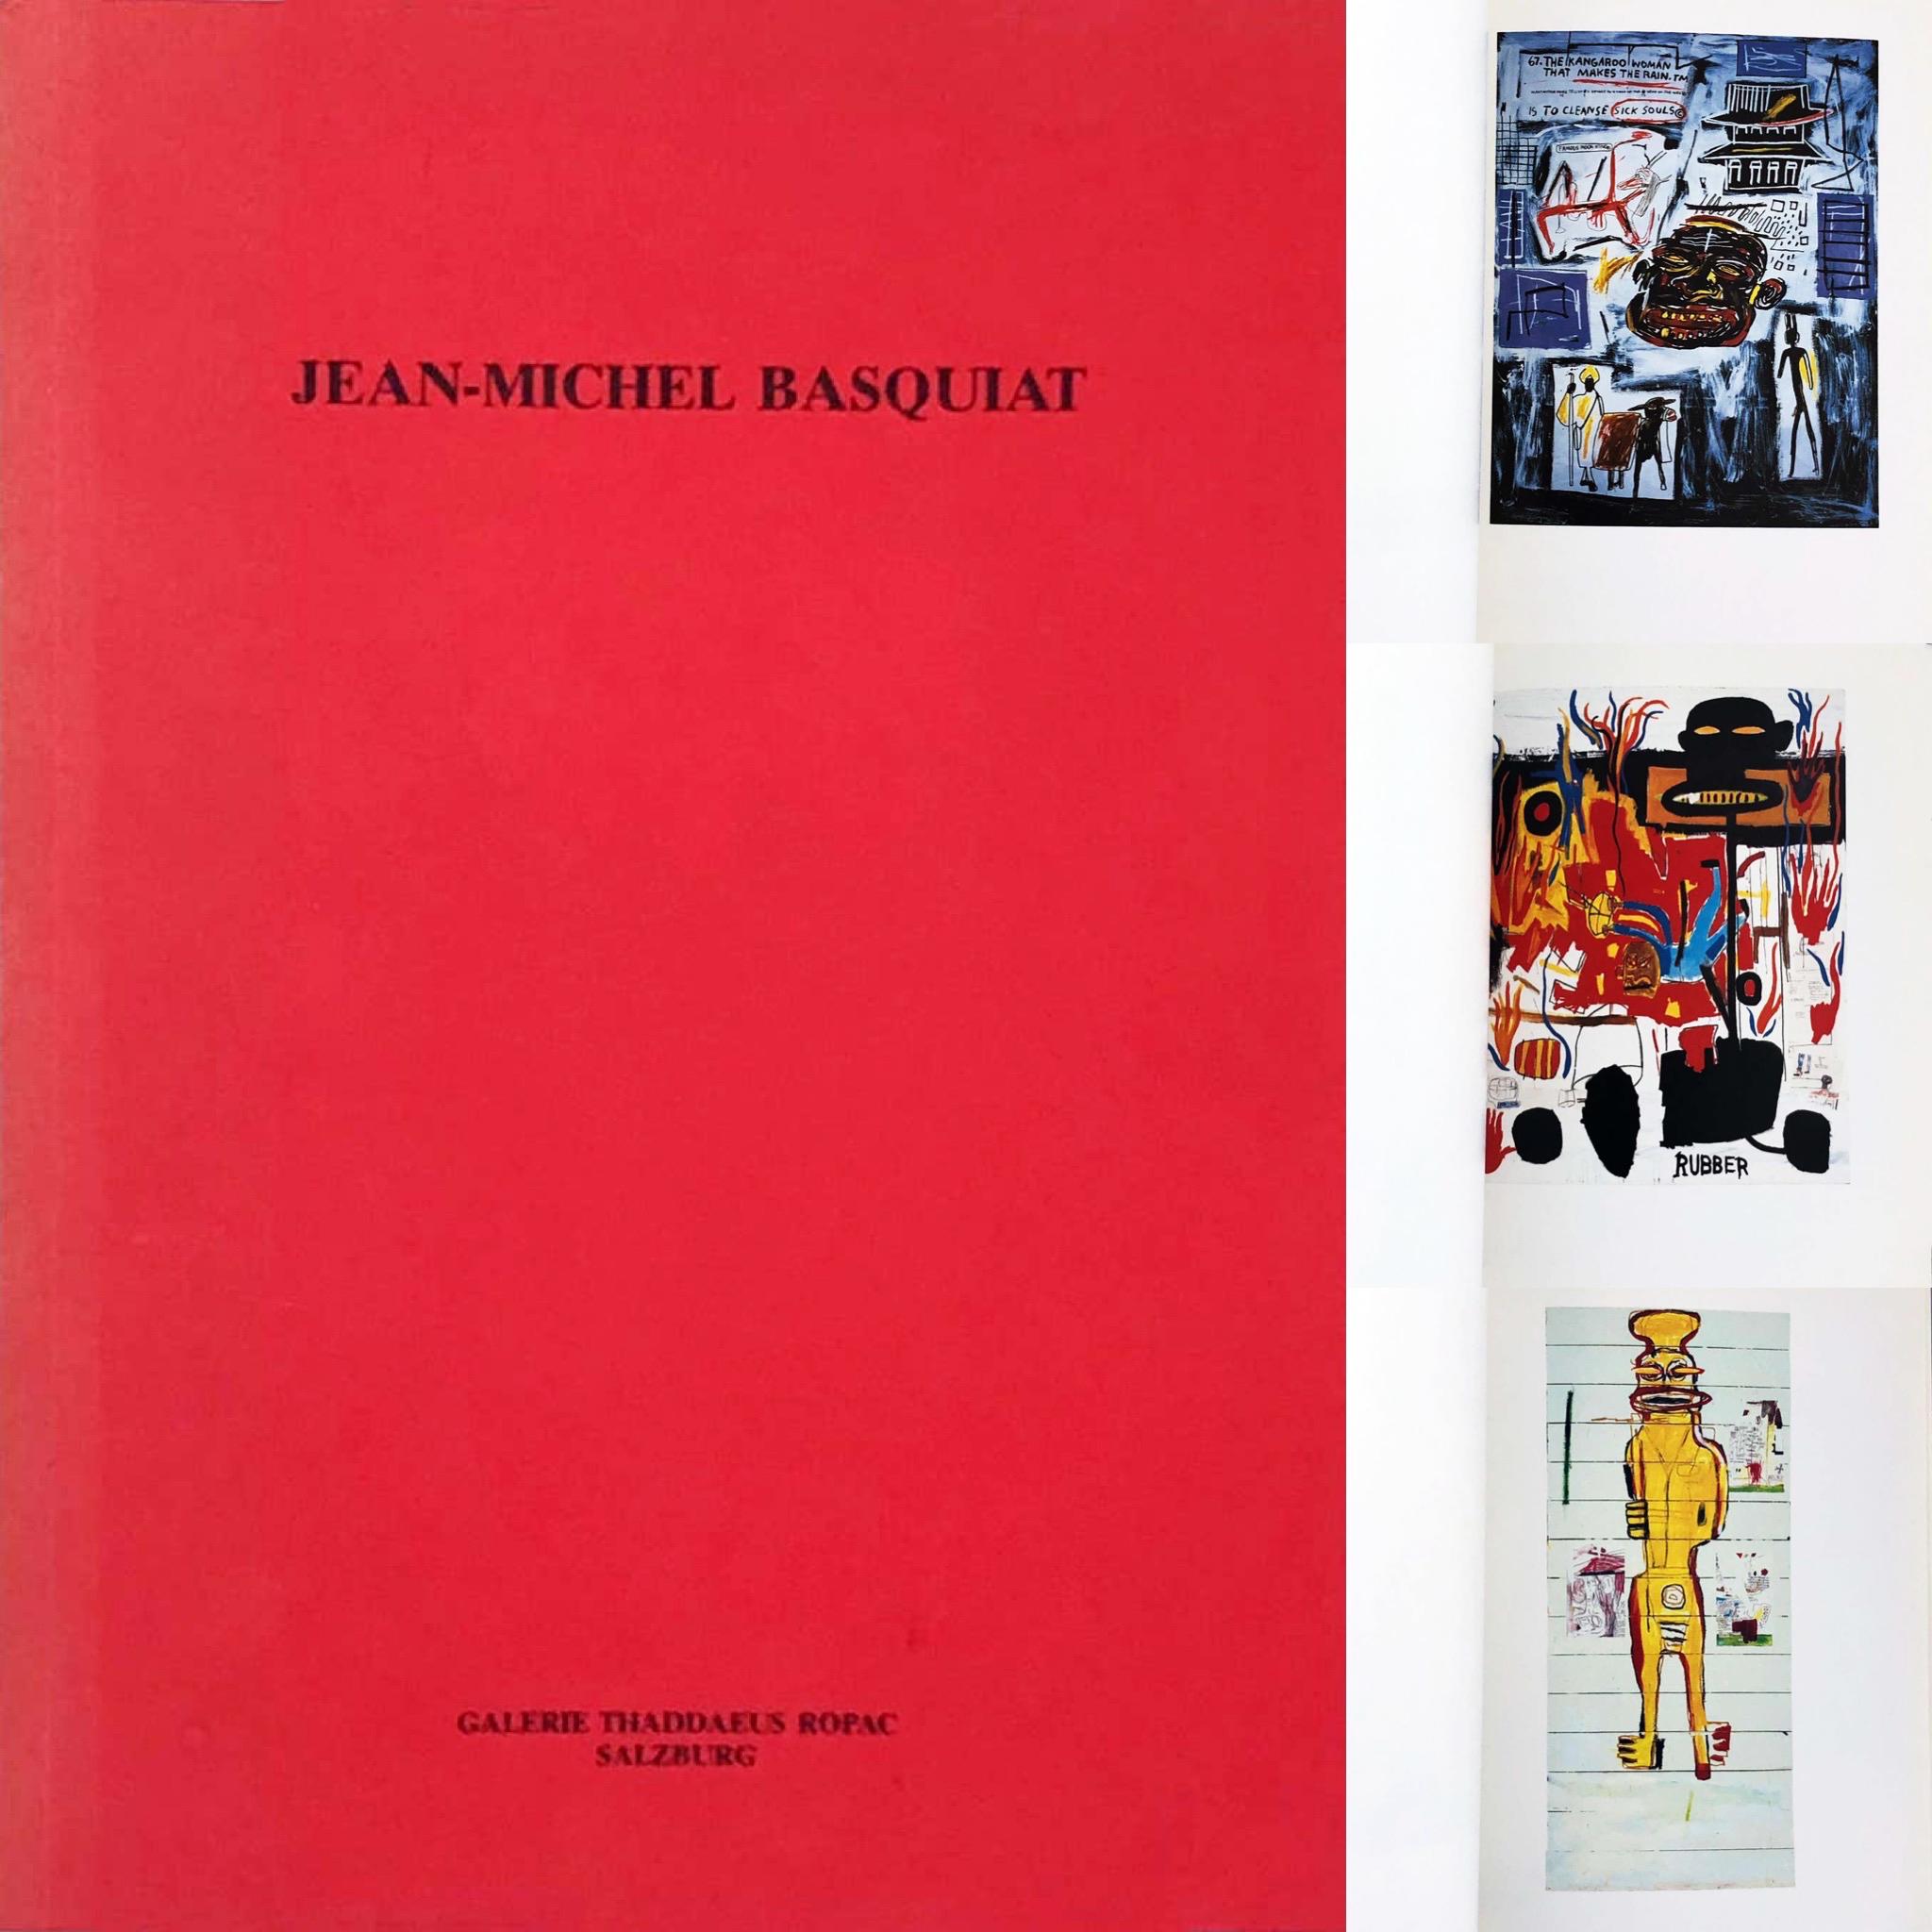 Jean-Michel Basquiat: Bilder 1984–1986 (Basquiat Thaddaeus Ropac gallery 1986)  - Print by (after) Jean-Michel Basquiat